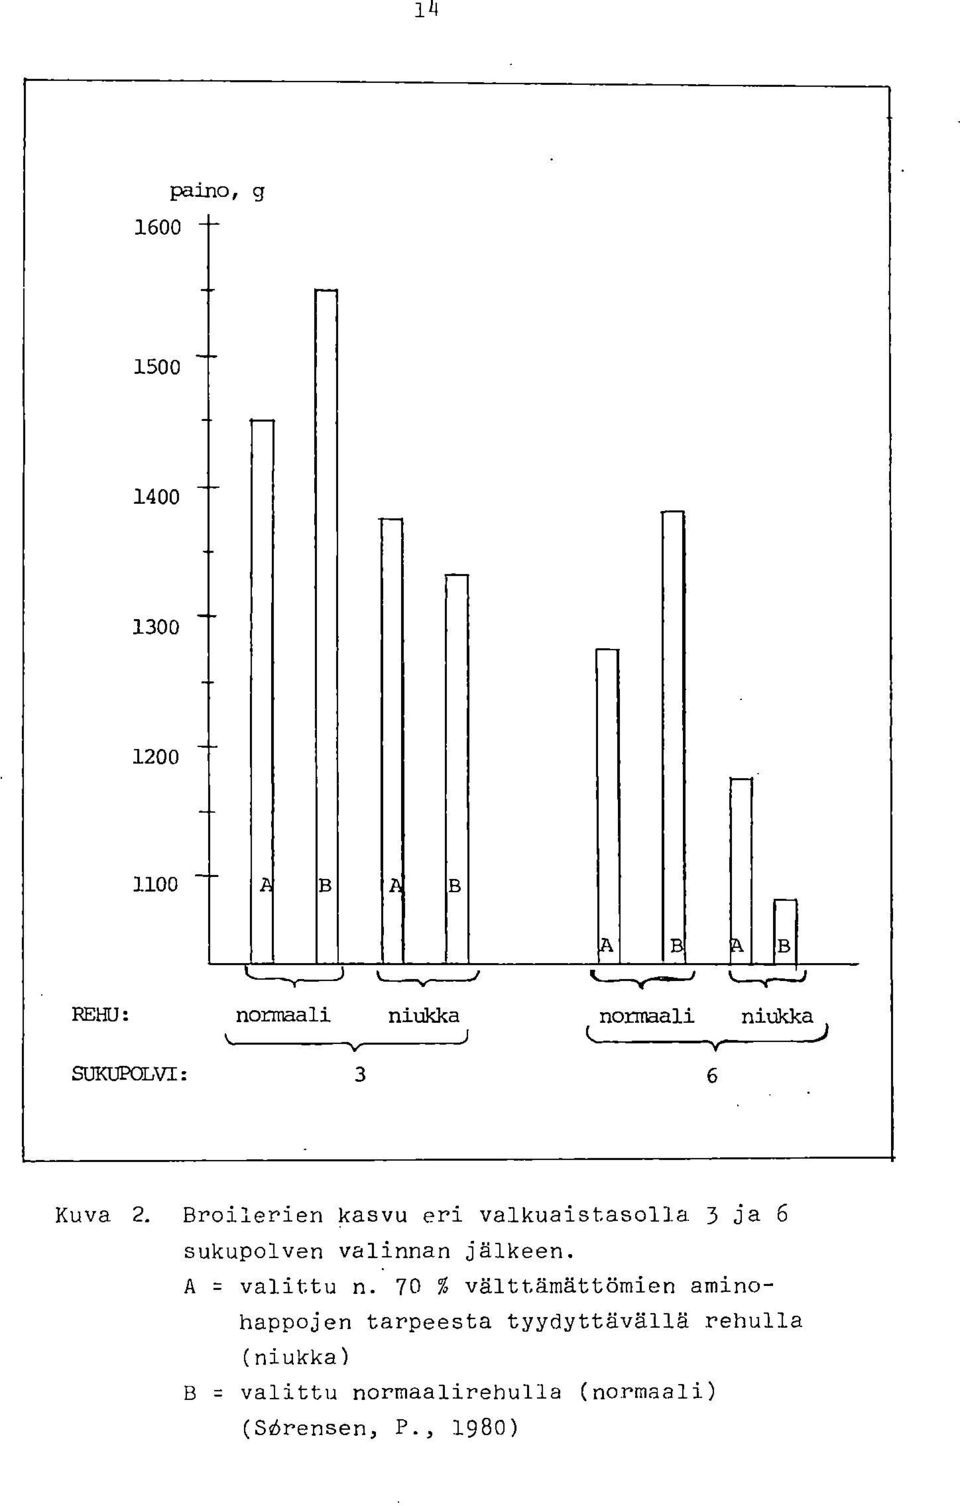 Broilerien kasvu eri valkuaistasolla 3 ja 6 sukupolven valinnan jälkeen.